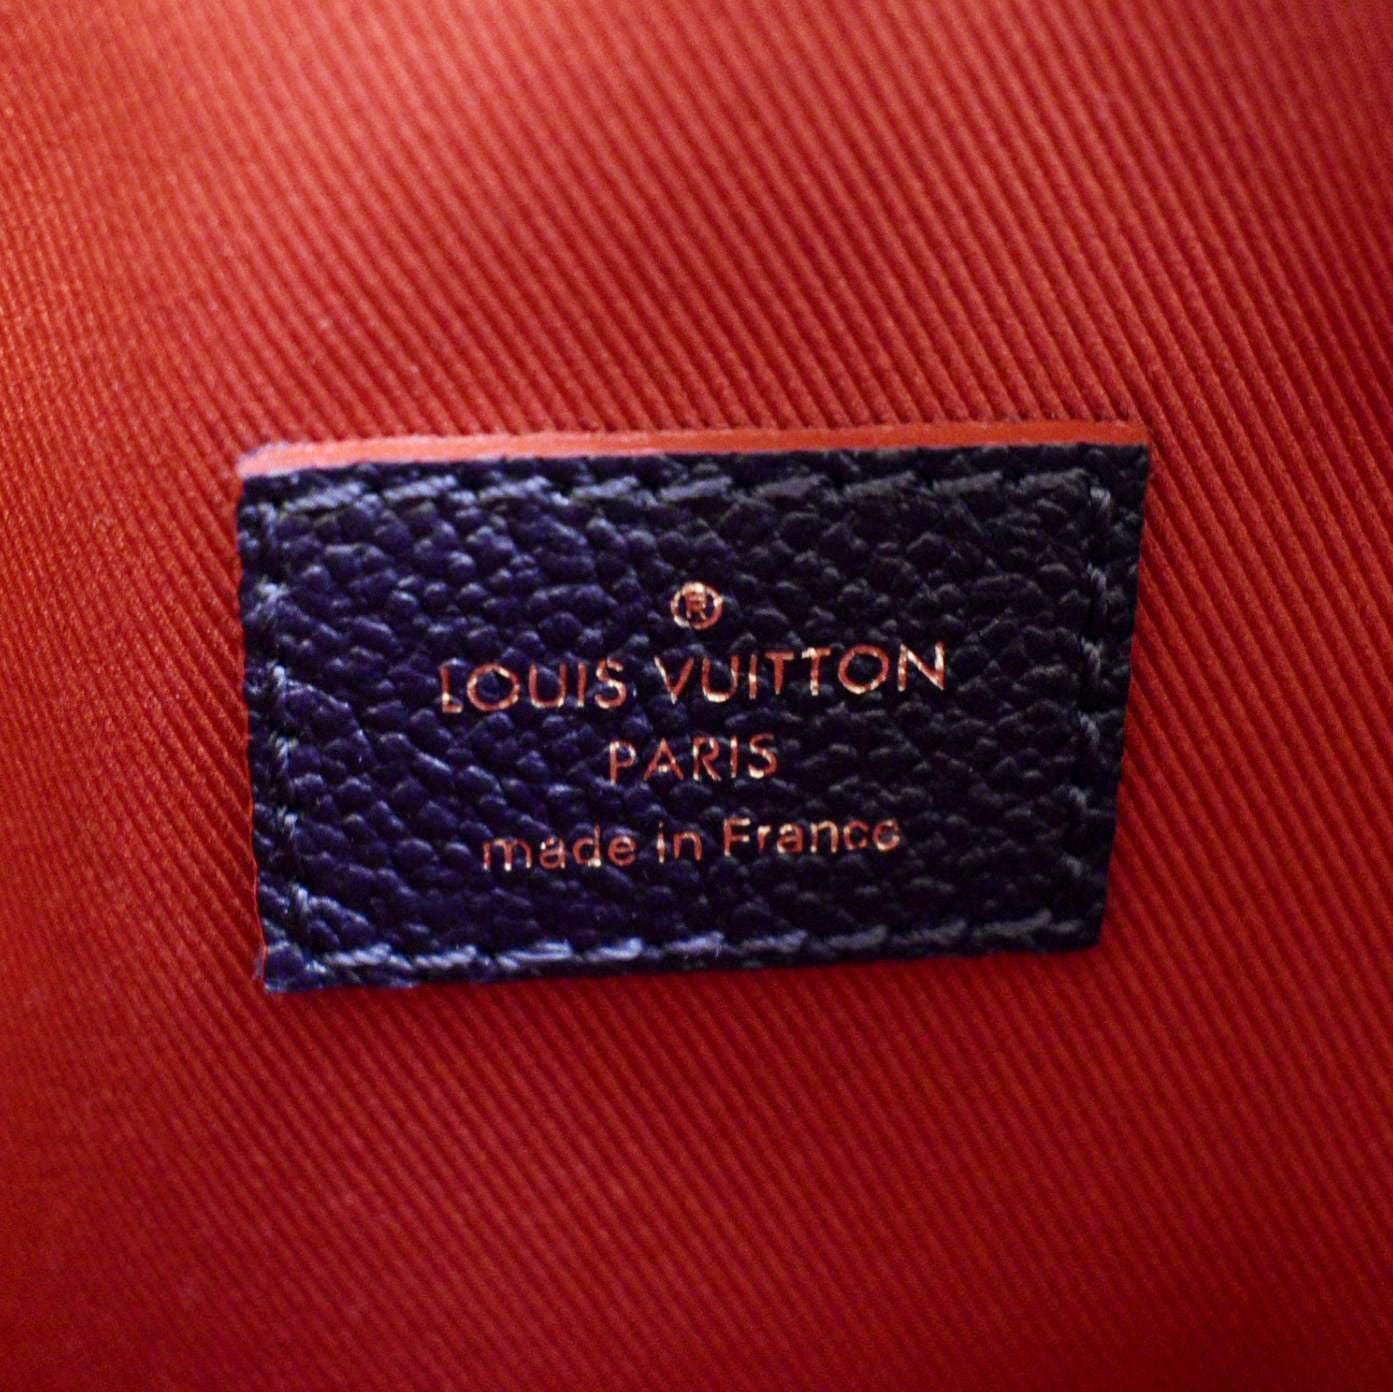 Louis Vuitton Black LV bag, All black outfits, Paris